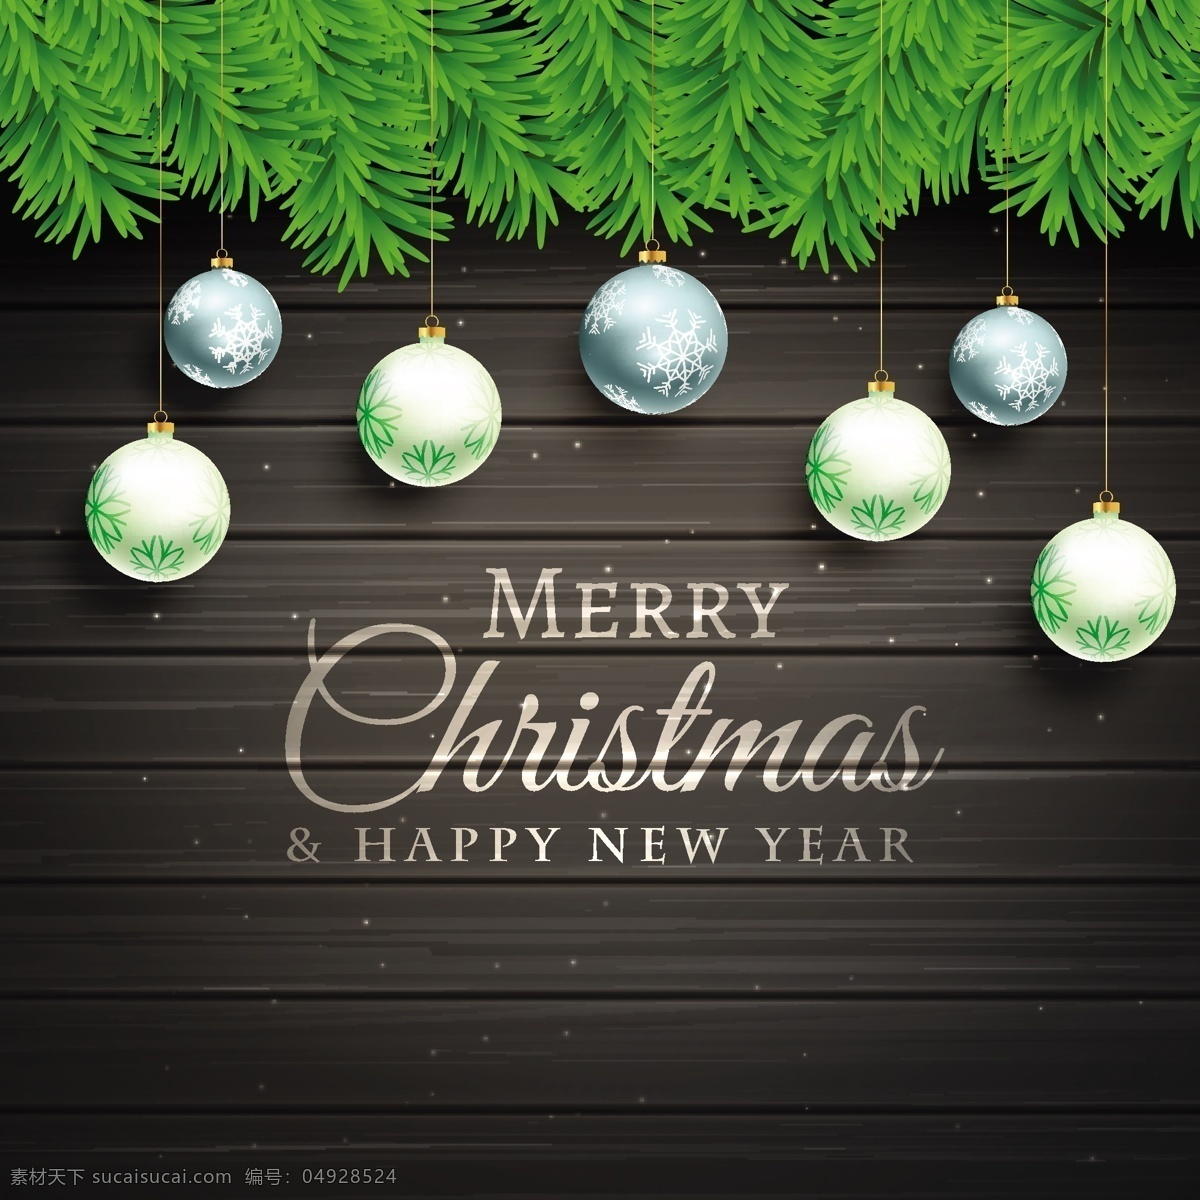 精美 圣诞 吊球 黑色 木板 背景 贺卡 矢量 白色 光晕 圣诞吊球 圣诞挂饰 圣诞节 矢量图 祝福卡